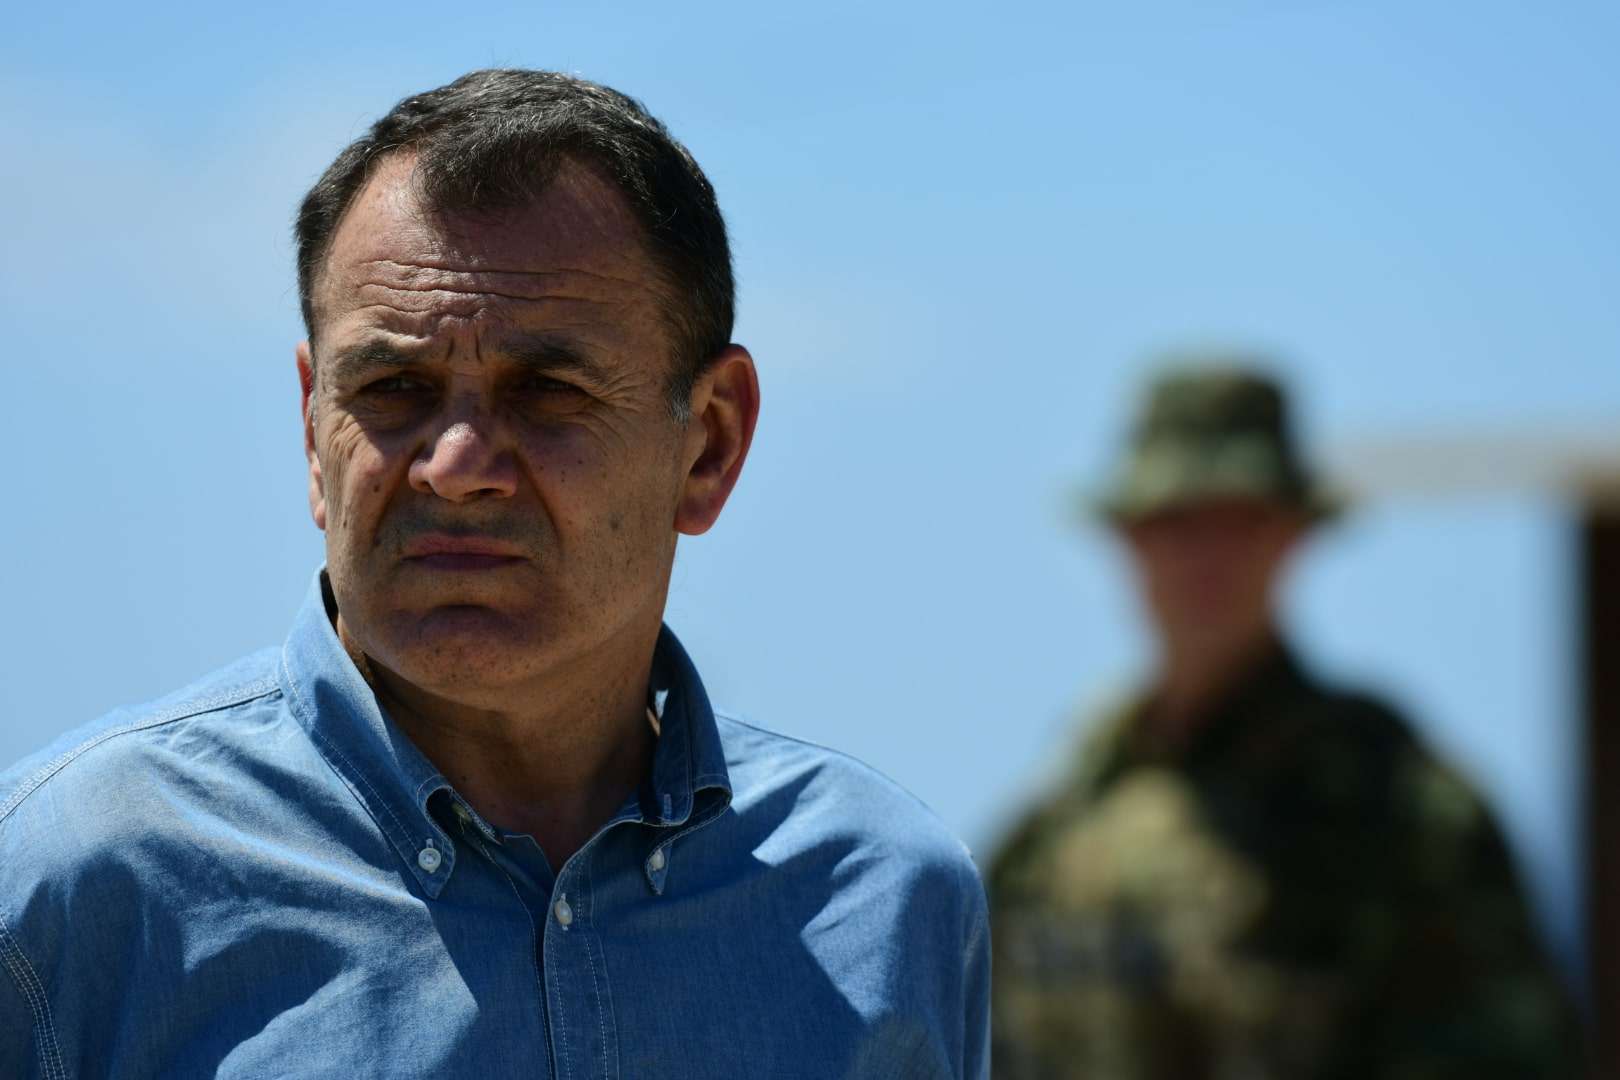 Ν.Παναγιωτόπουλος: «Ο αριθμός των επιβεβαιωμένων κρουσμάτων δεν έχει επηρεάσει την ετοιμότητα των Ενόπλων Δυνάμεων»